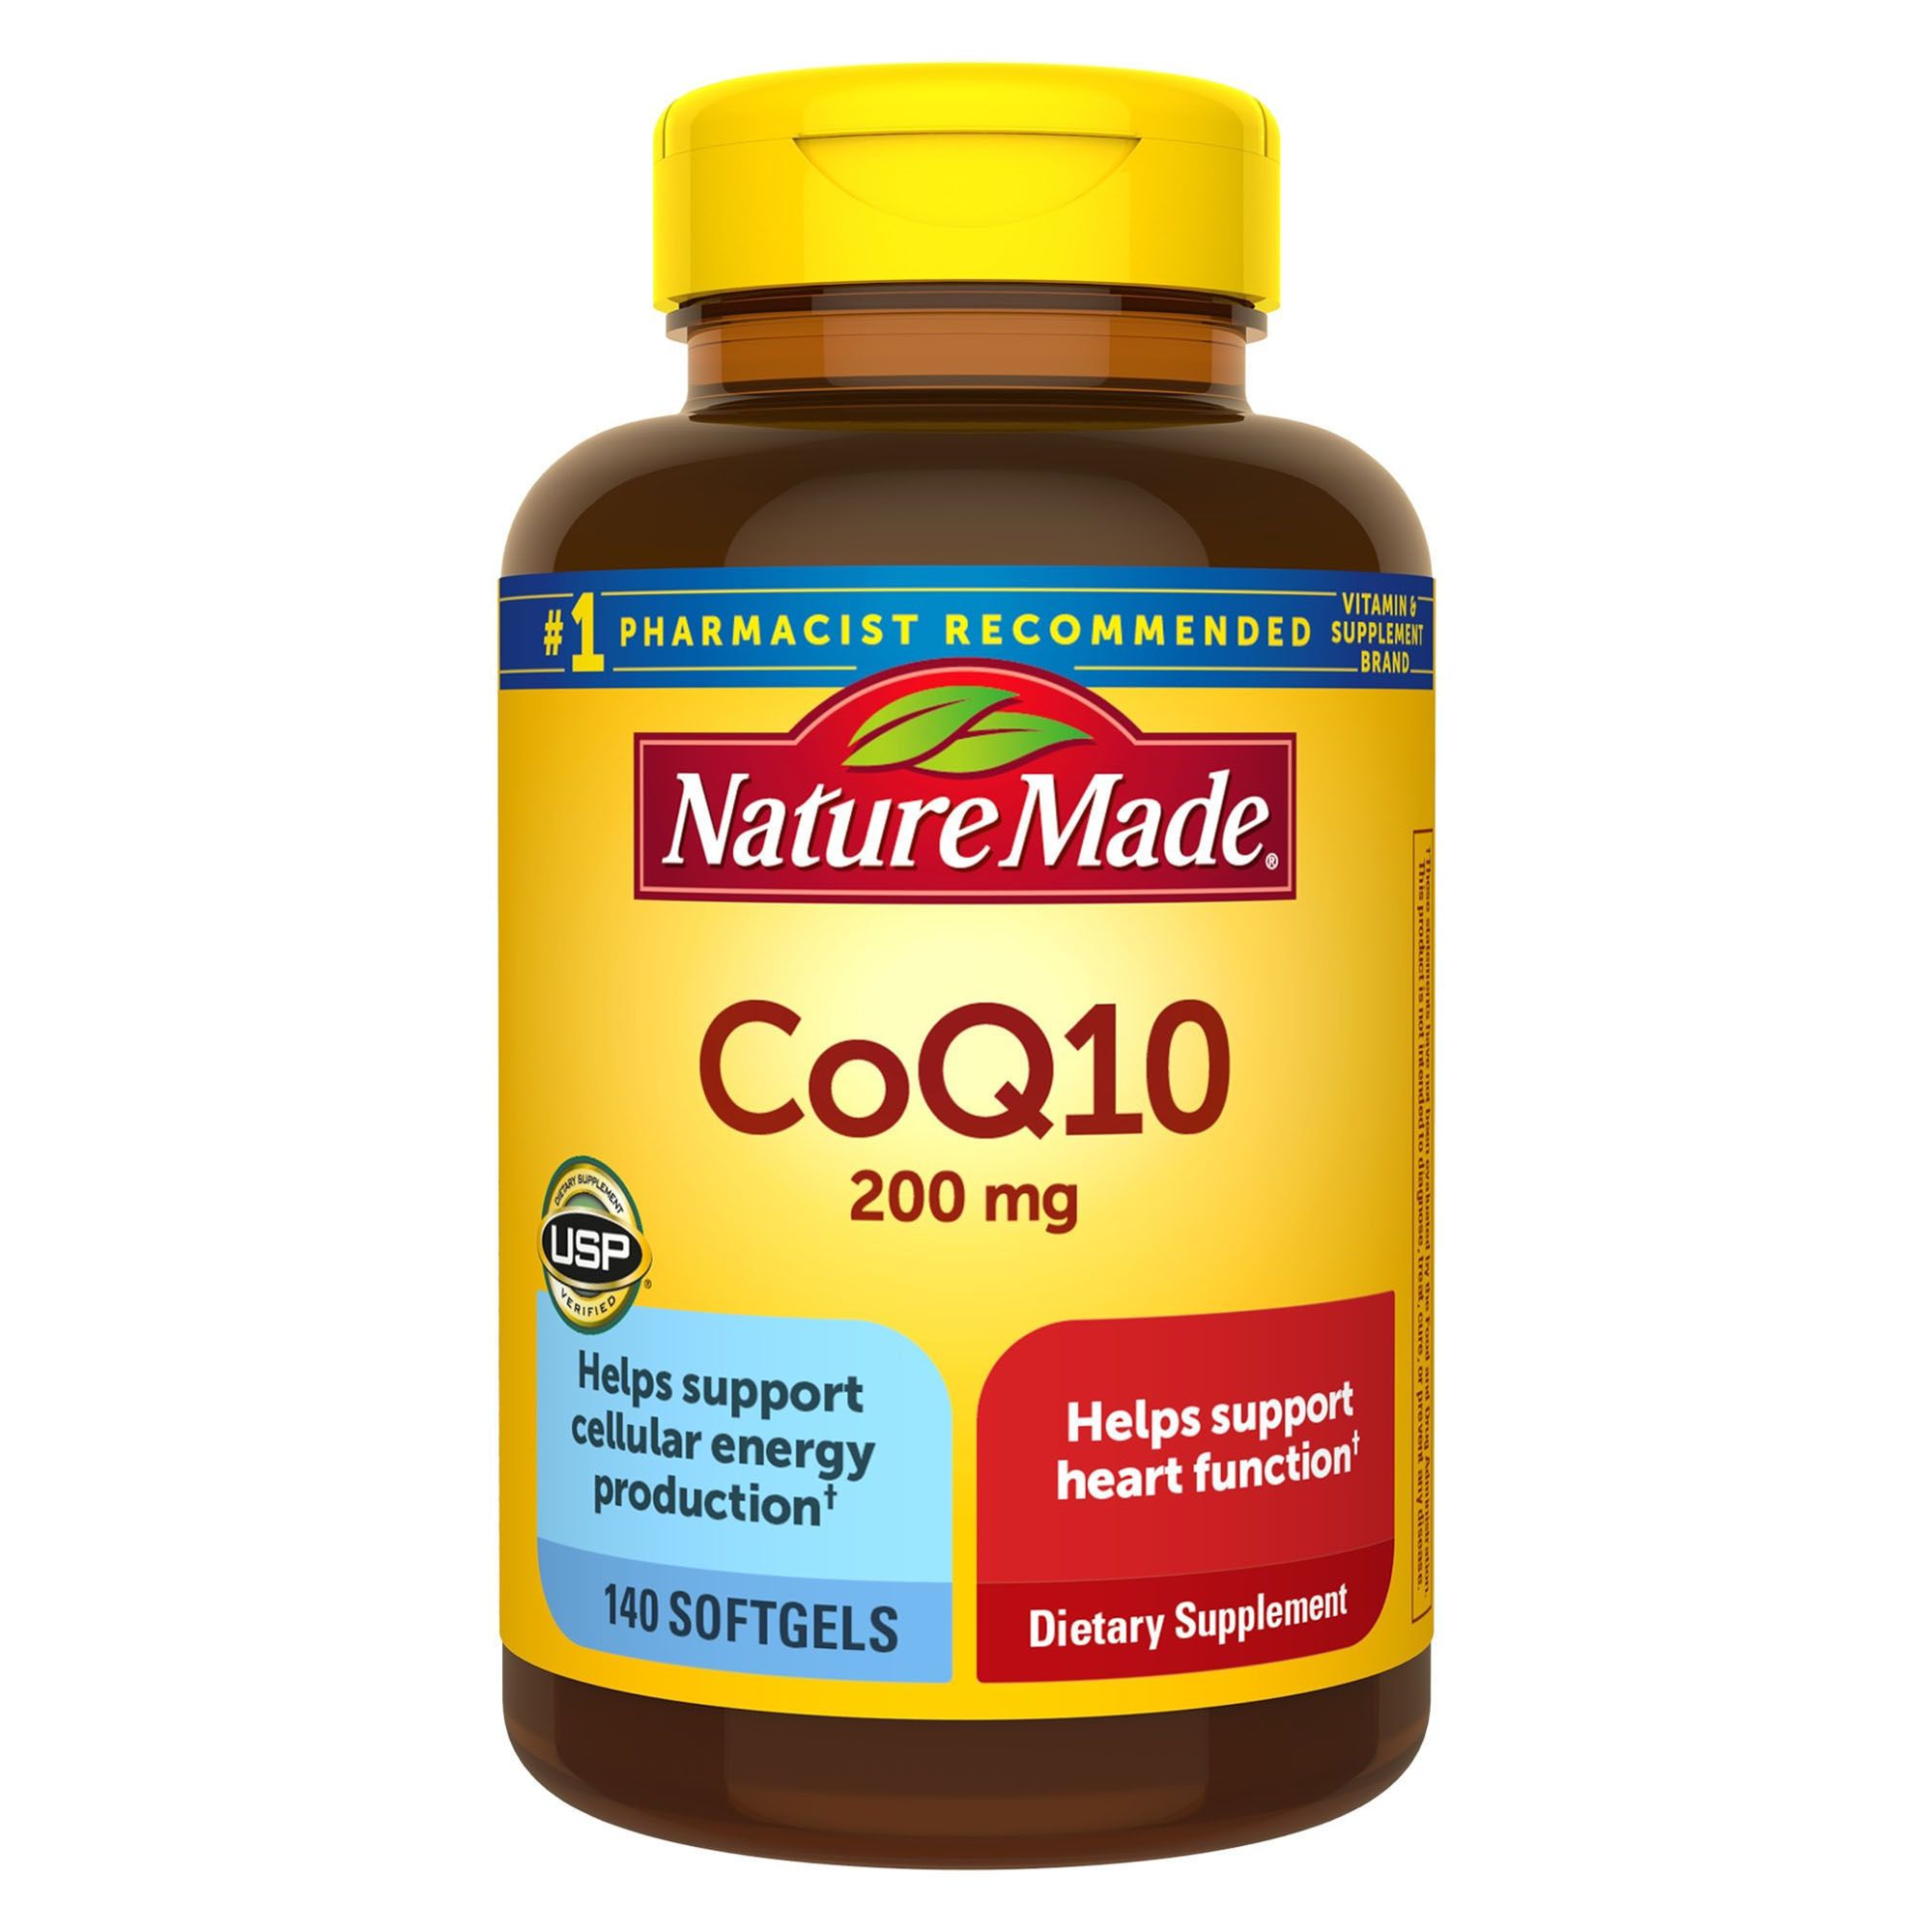 Nature Made CoQ10 200 mg Softgels, 140 ct.